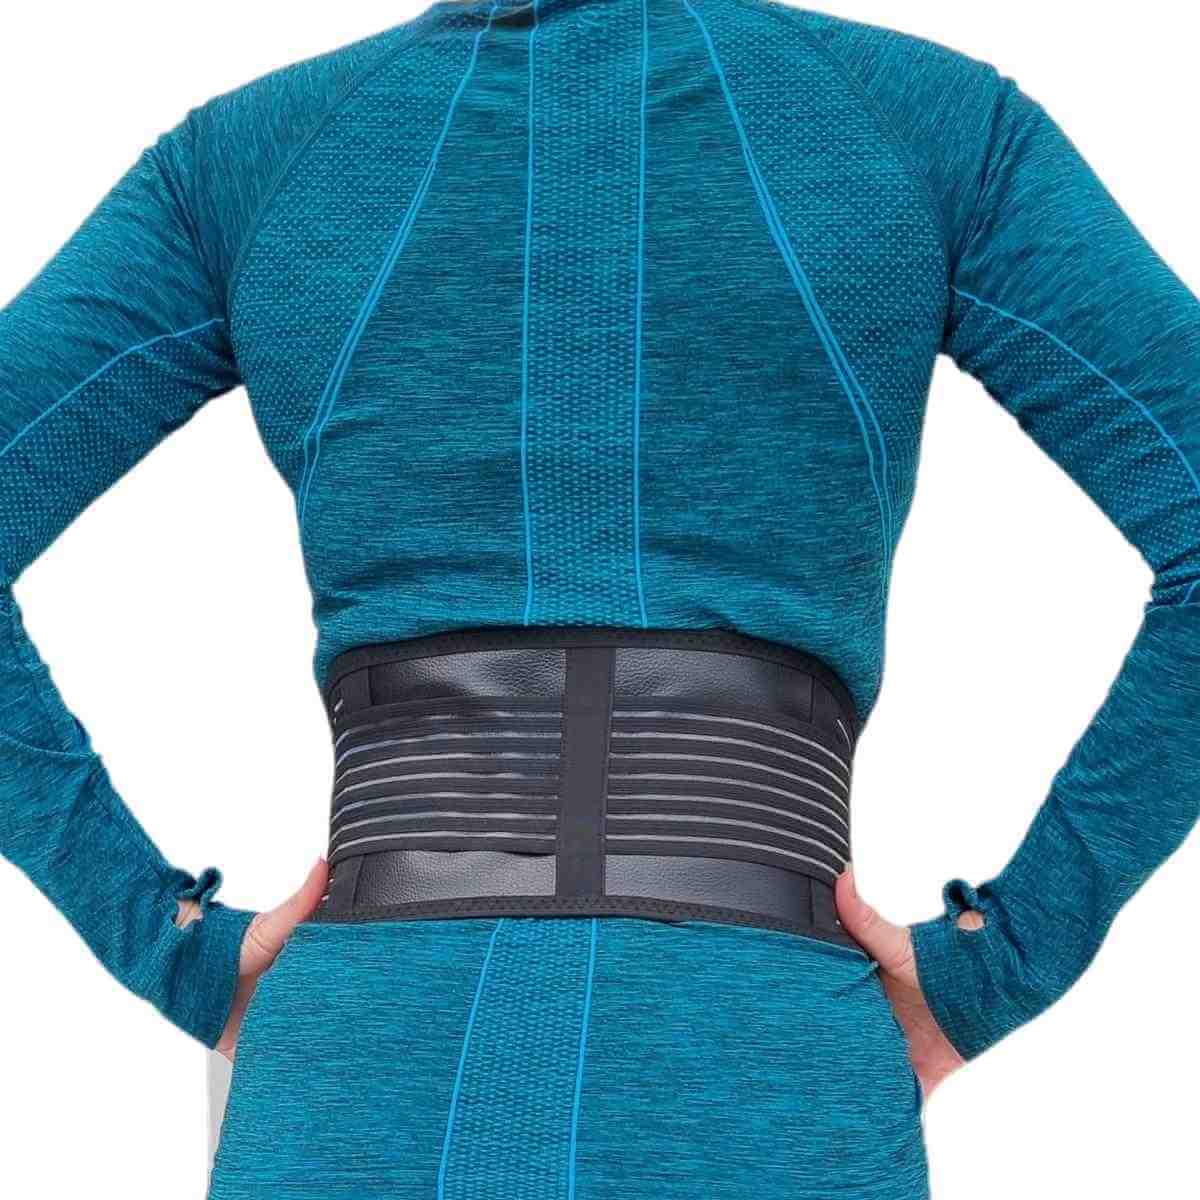 Lændebælte med selvopvarmende turmaliner og elastik stropper fra Carerelief til smerter og spændinger i ryggen, 3 størrelser, Unisex. Køb anatomisk rygbælte LB20 til mænd og kvinder online.